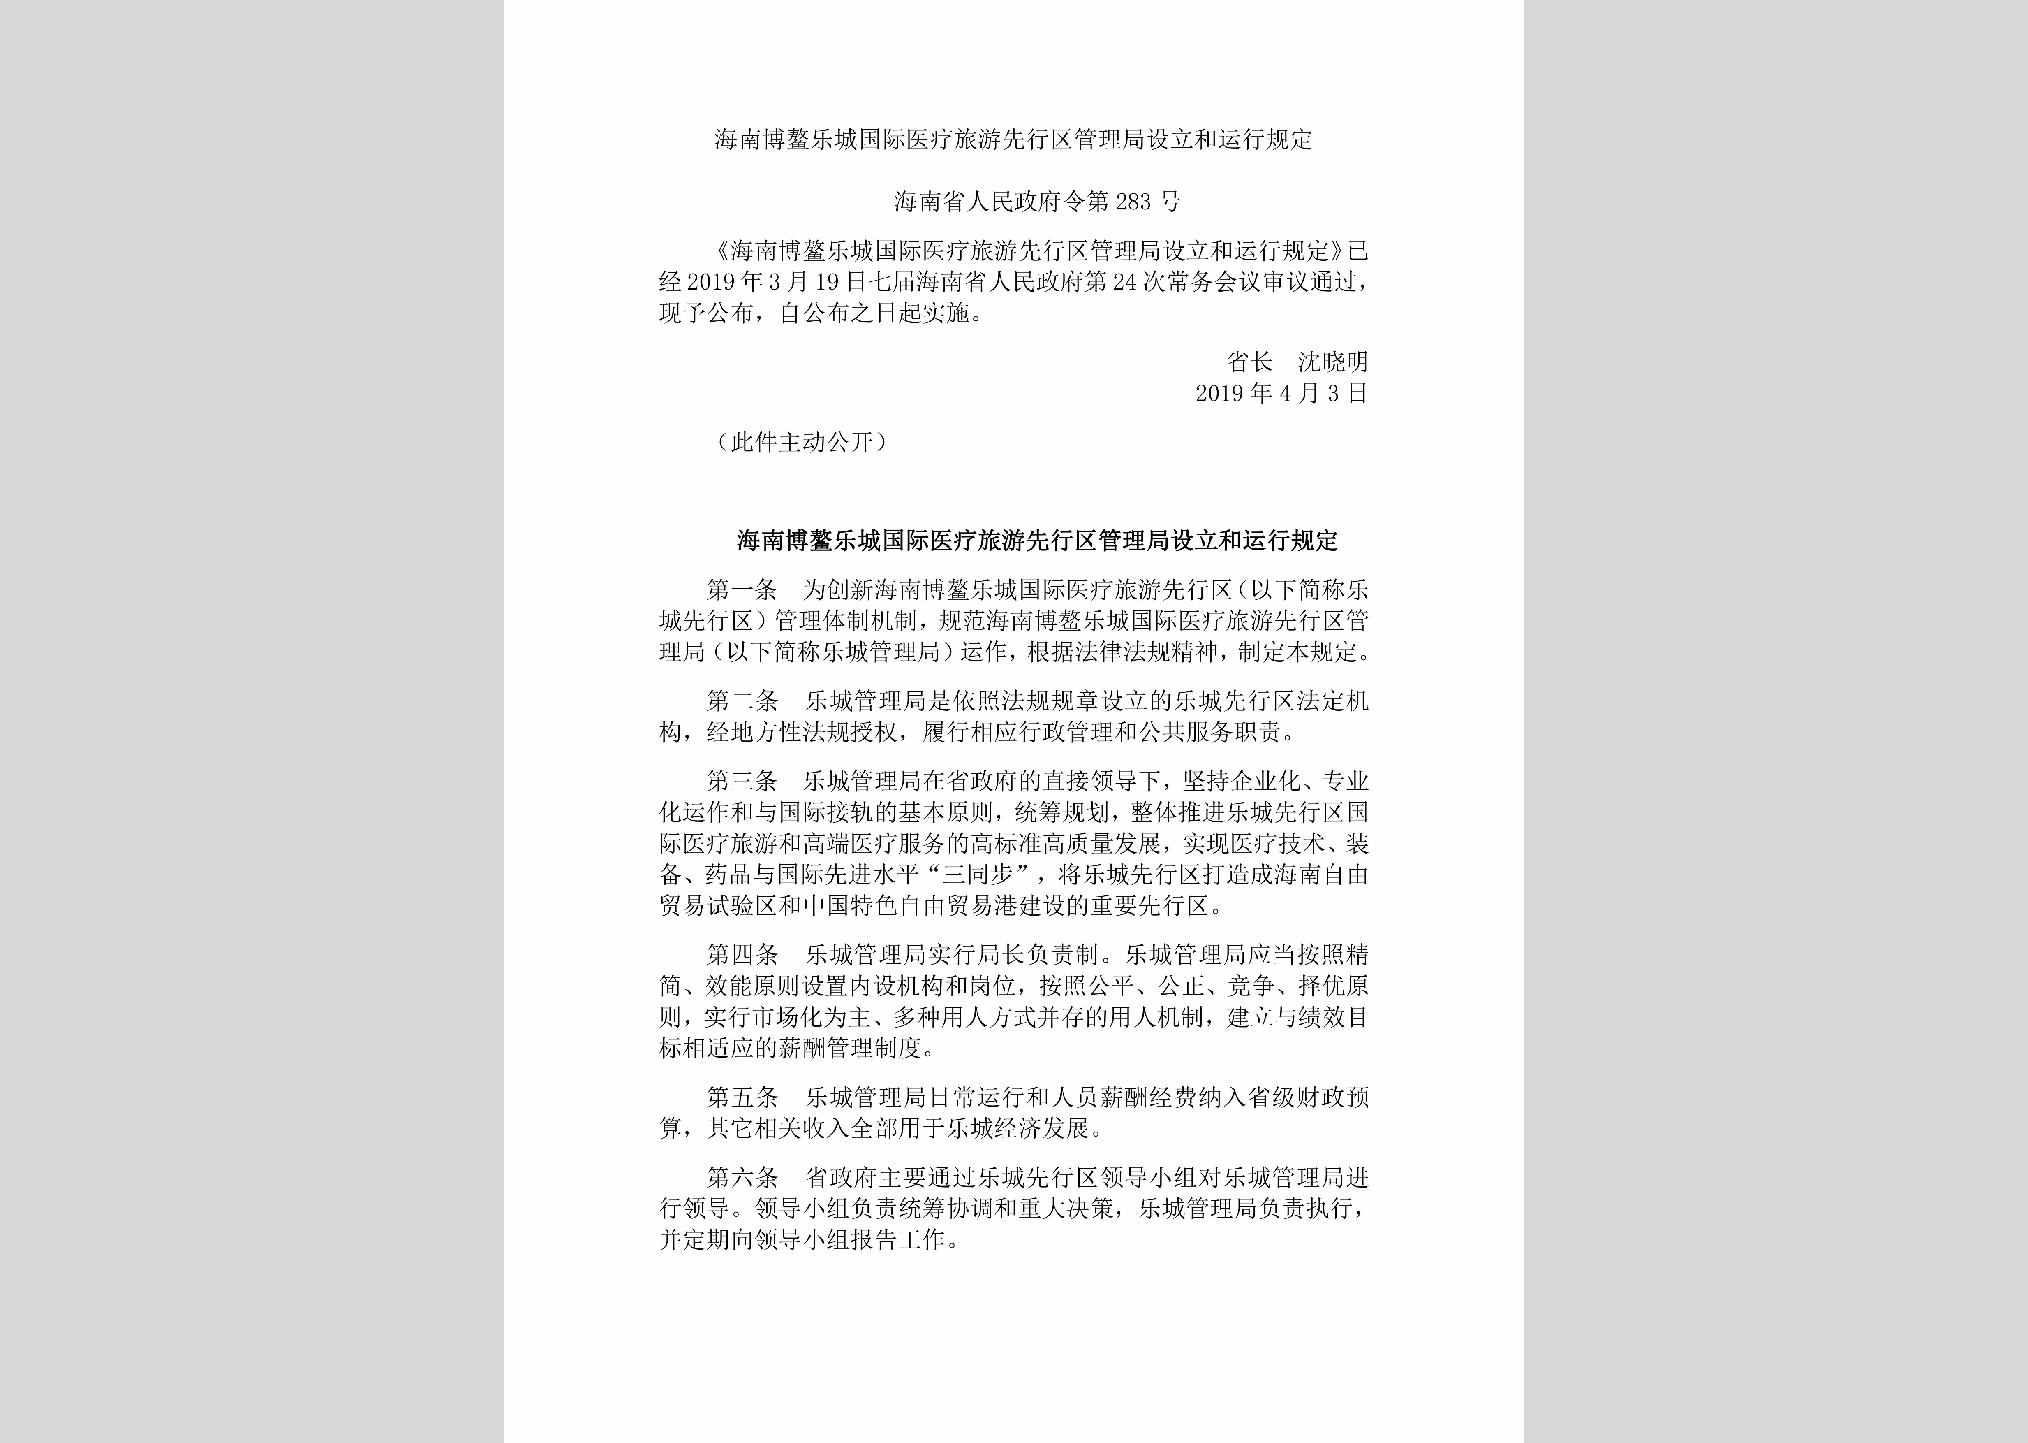 海南省人民政府令第283号：海南博鳌乐城国际医疗旅游先行区管理局设立和运行规定